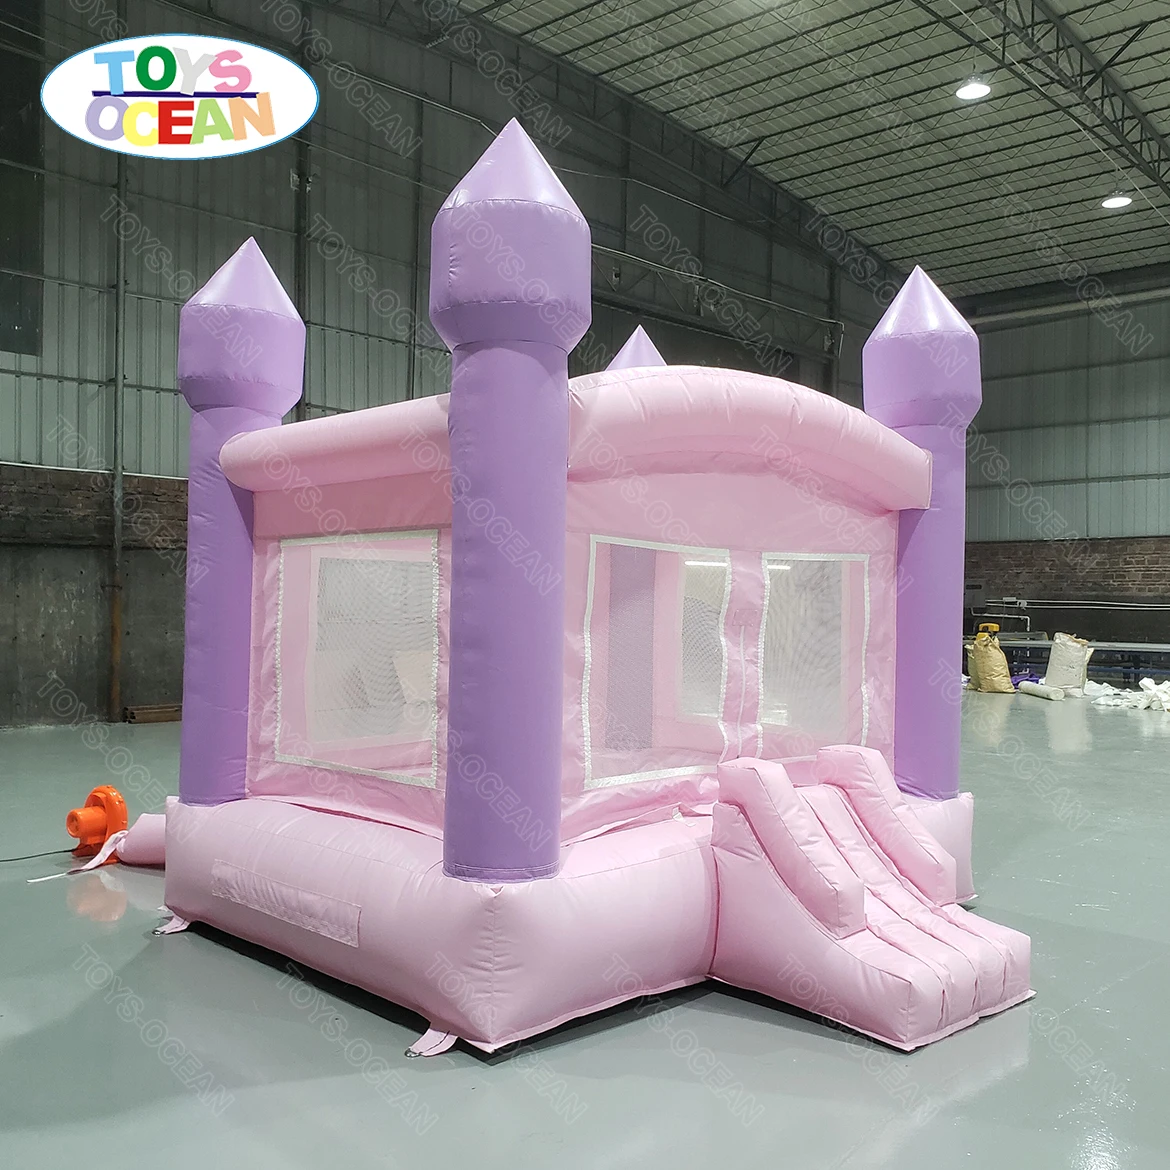 мини-надувной домик для прыжков 10x10 футов, комбинация белого/розового замка-перемычки